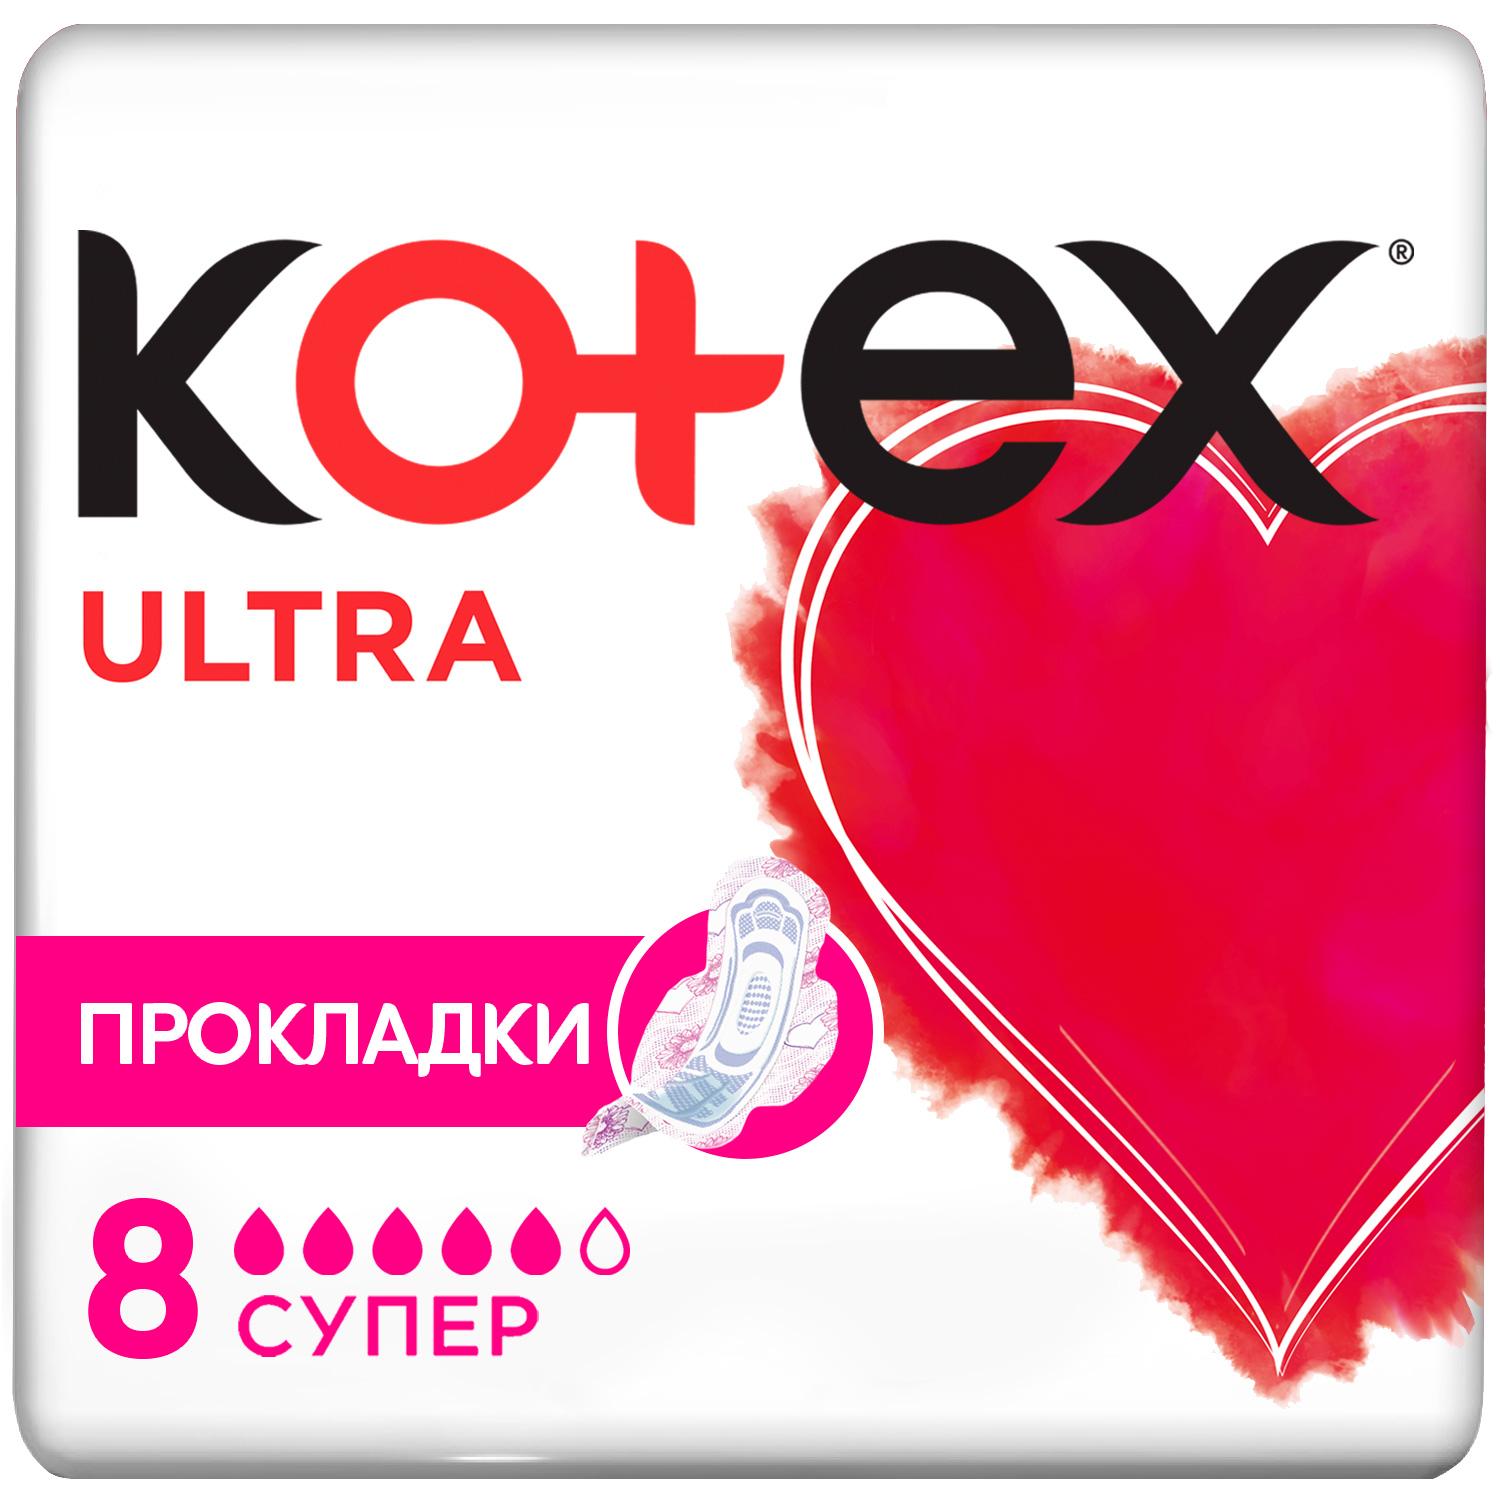 Прокладки Kotex Ultra Cупер 5 капель, 8 шт